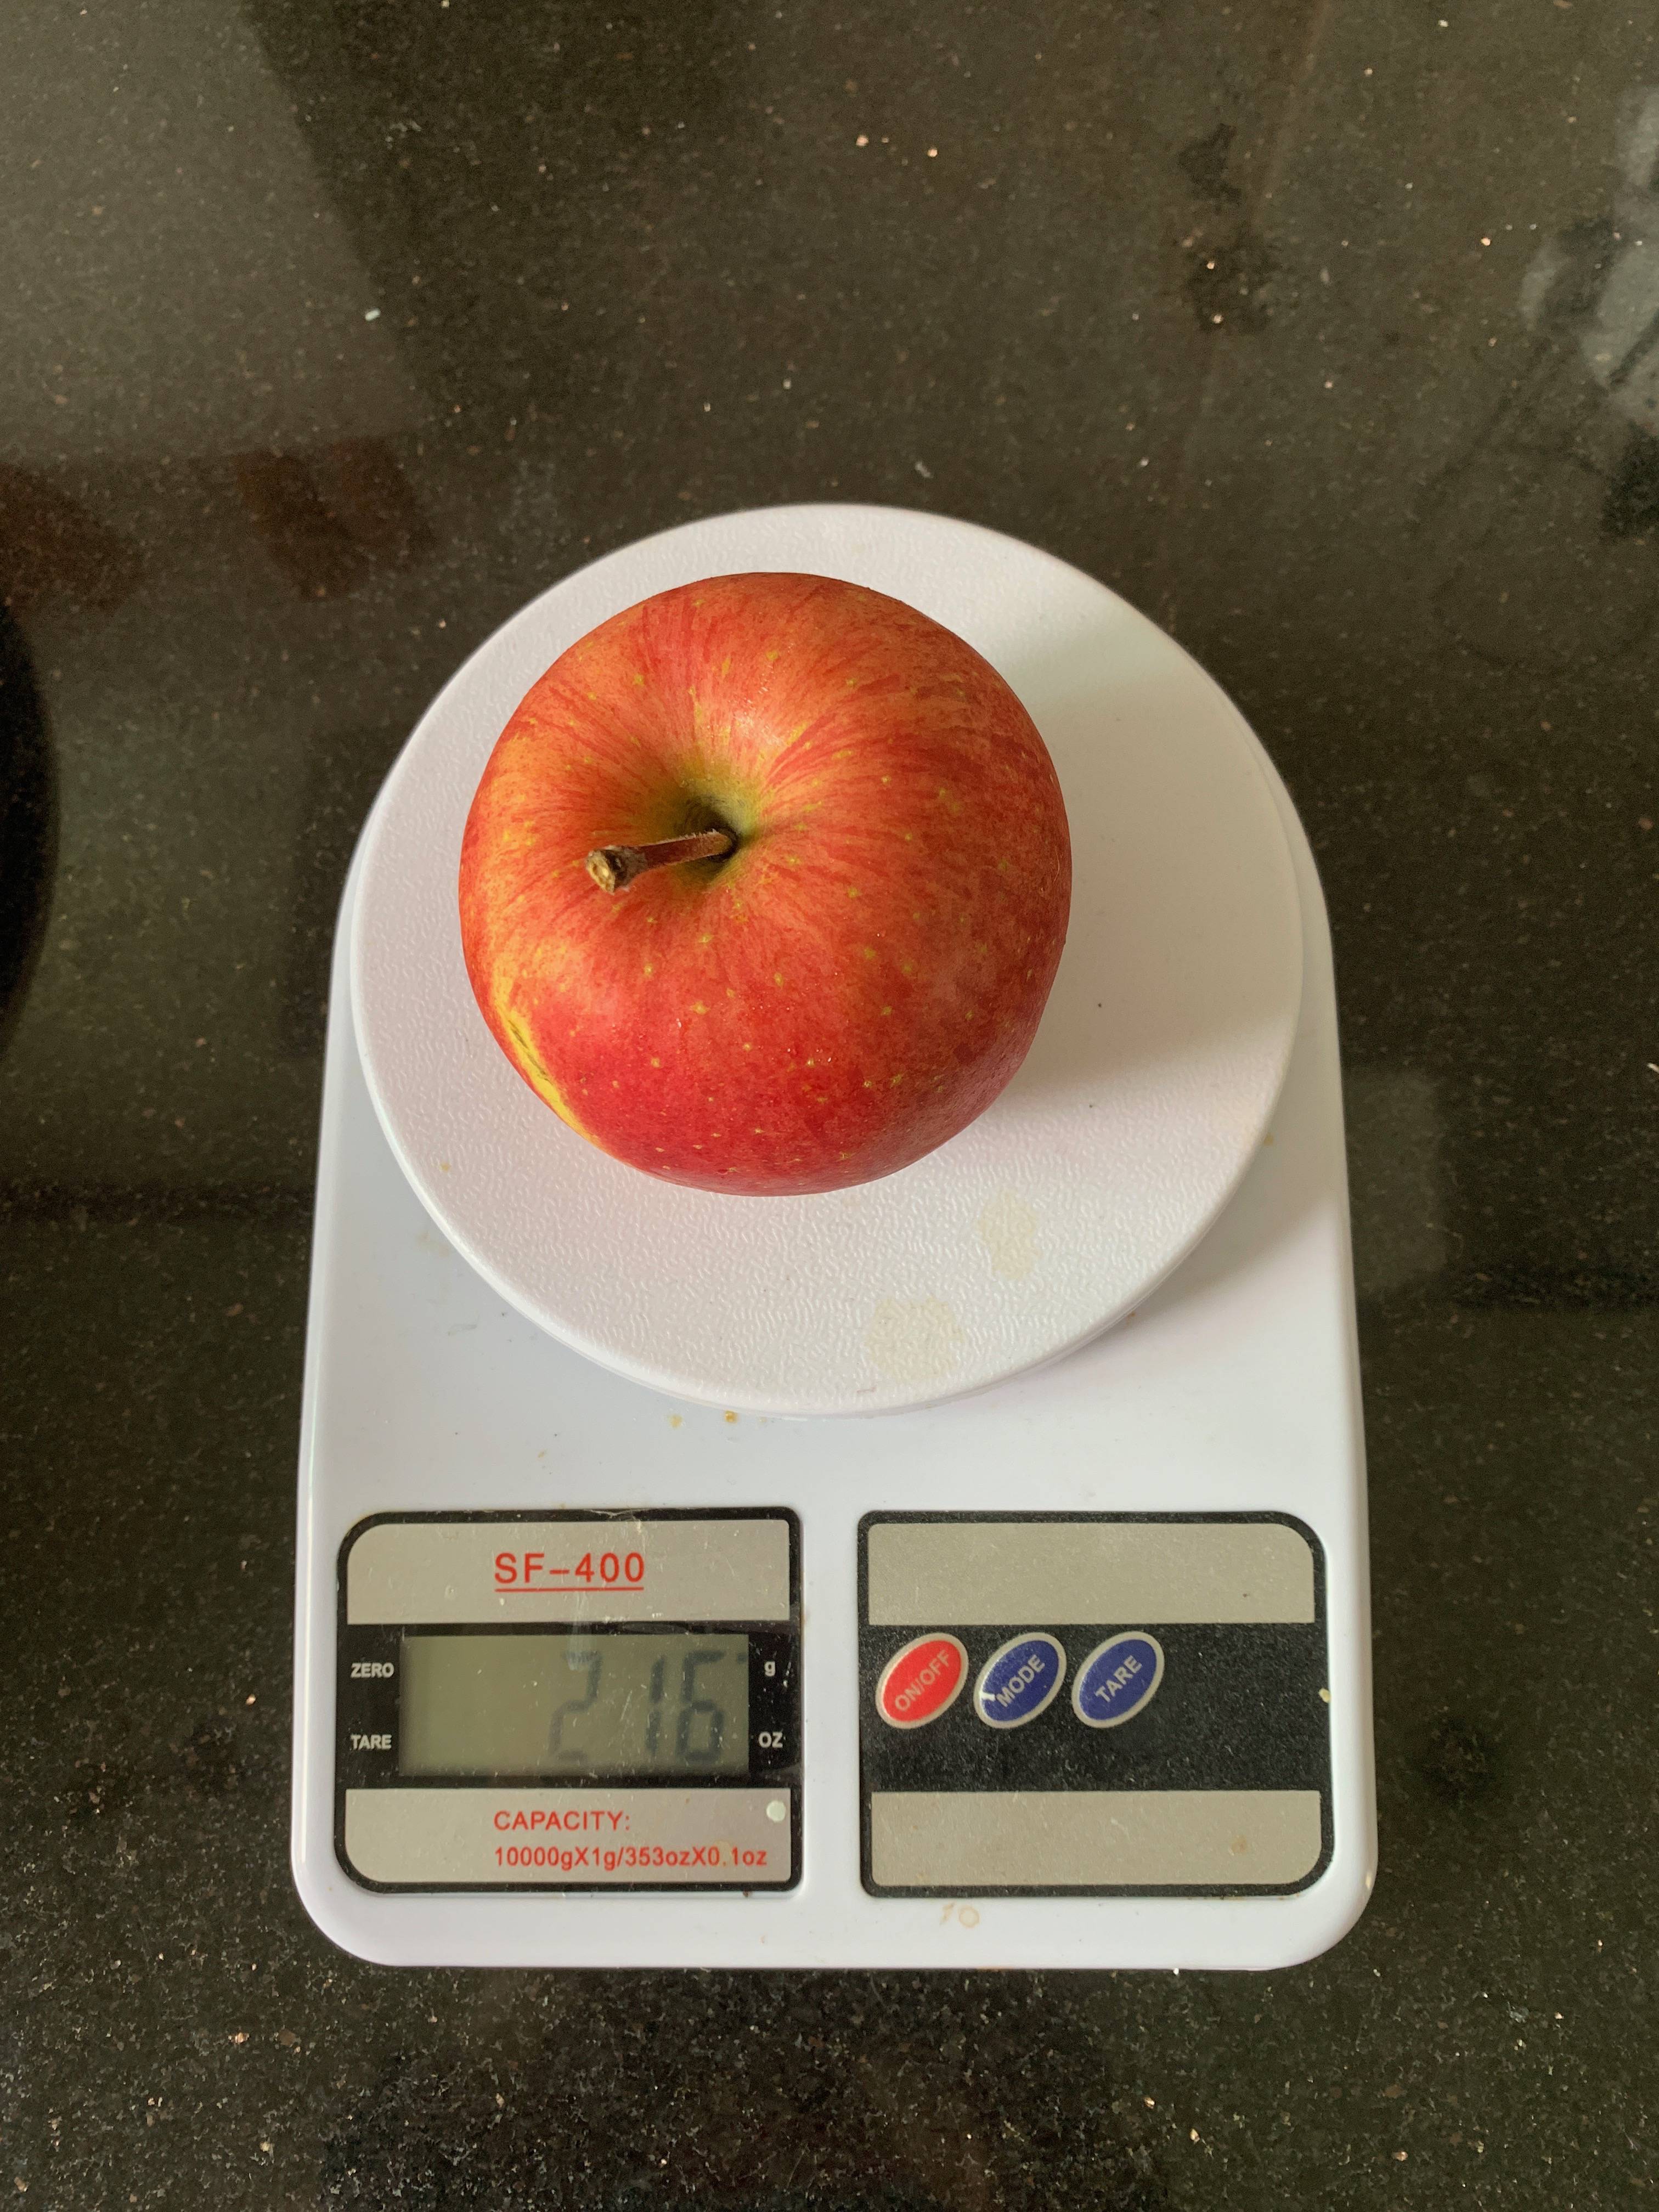 Сколько весит яблоко в граммах. Яблоко Голден вес 1 шт. Красное яблоко вес 1 шт. Вес зеленого яблока 1 шт. Яблоко грамм.